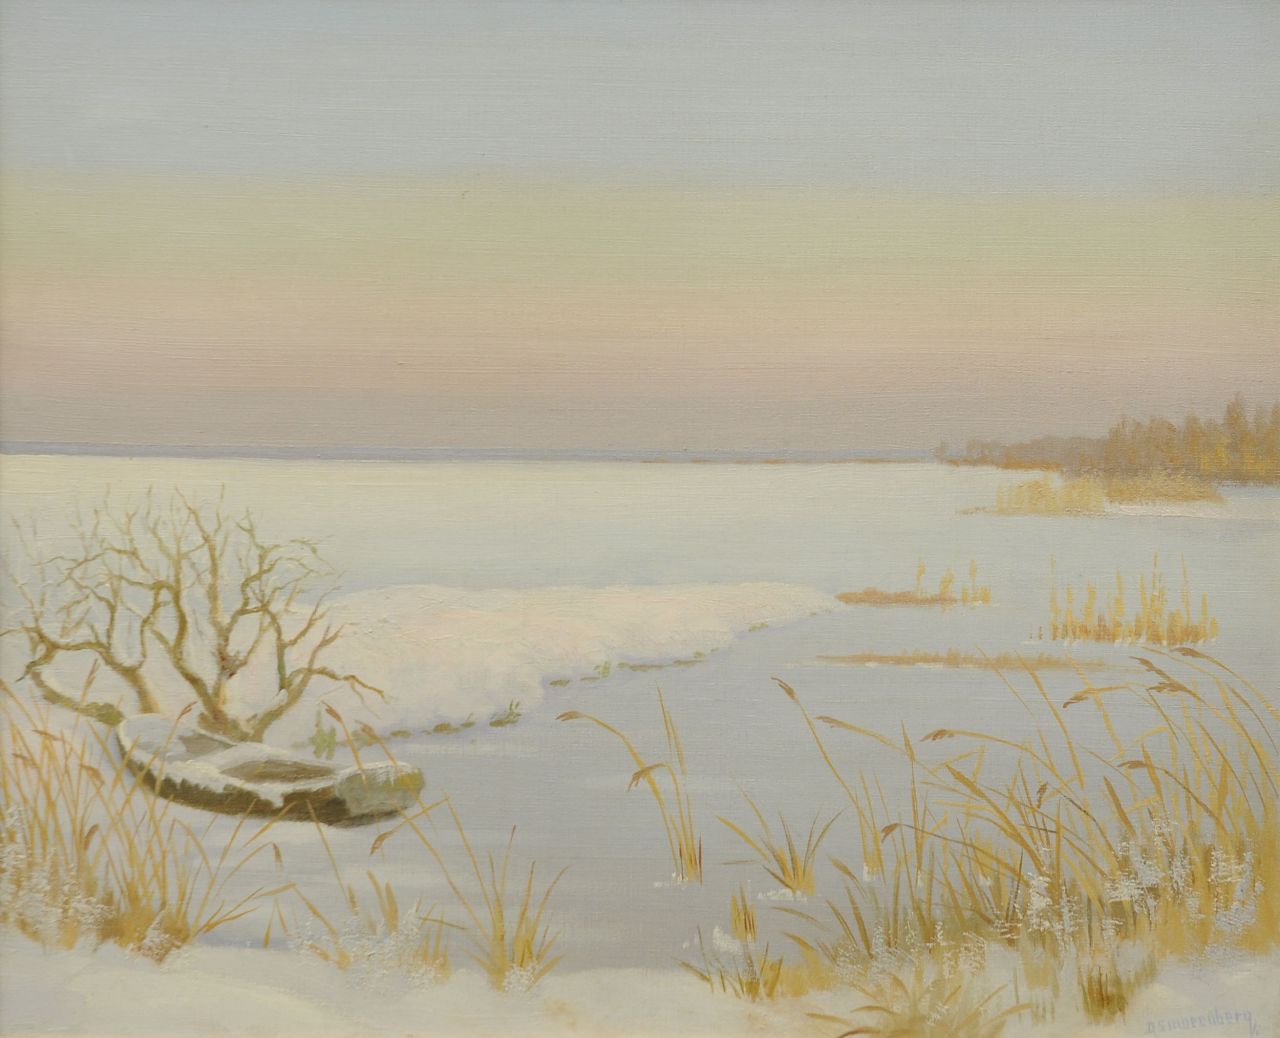 Smorenberg D.  | Dirk Smorenberg, Loosdrechts plassengezicht in de winter, olieverf op doek 46,2 x 56,3 cm, gesigneerd rechtsonder